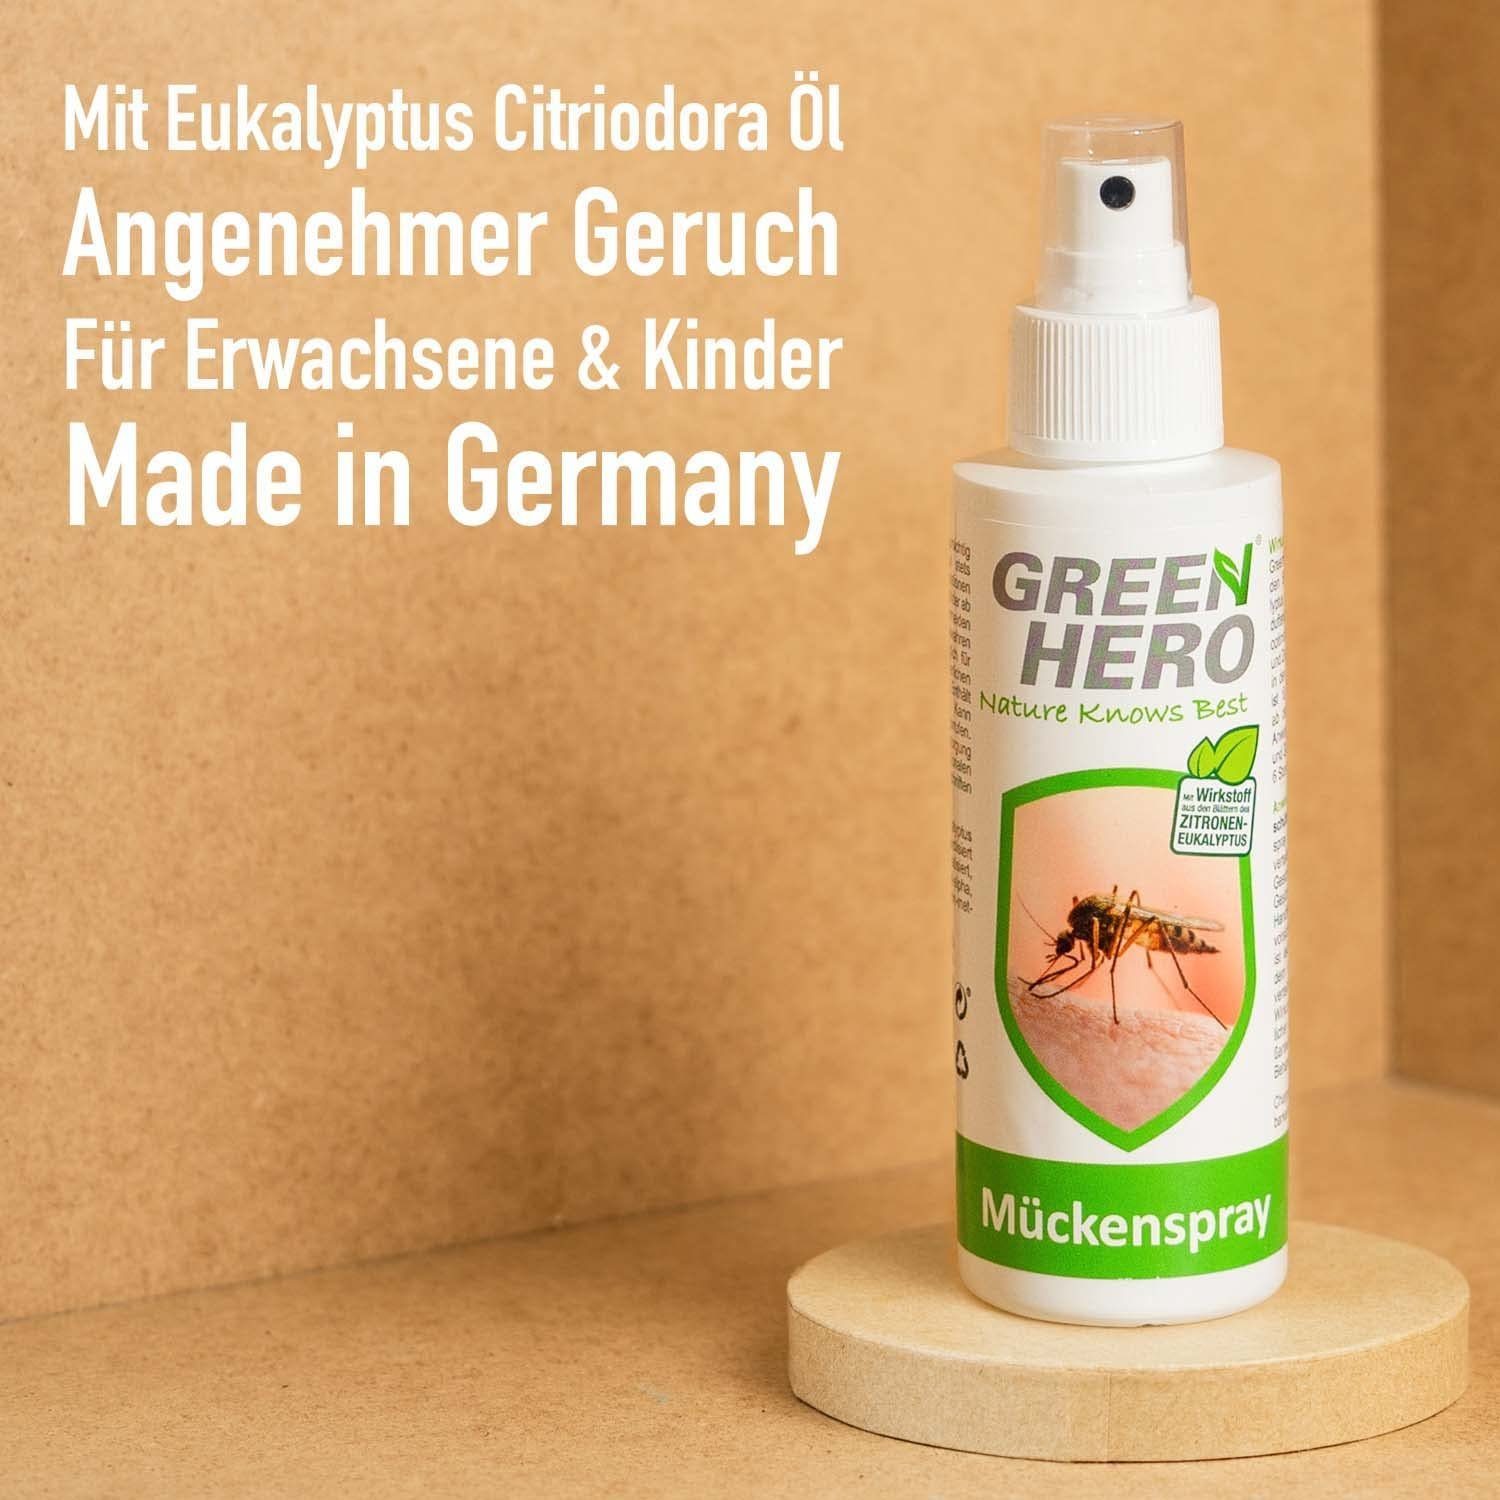 GreenHero Insektenspray Mückenspray schützt ml, Moskitos Zecken, & Steckmücken, vor 100 Mückenschutz